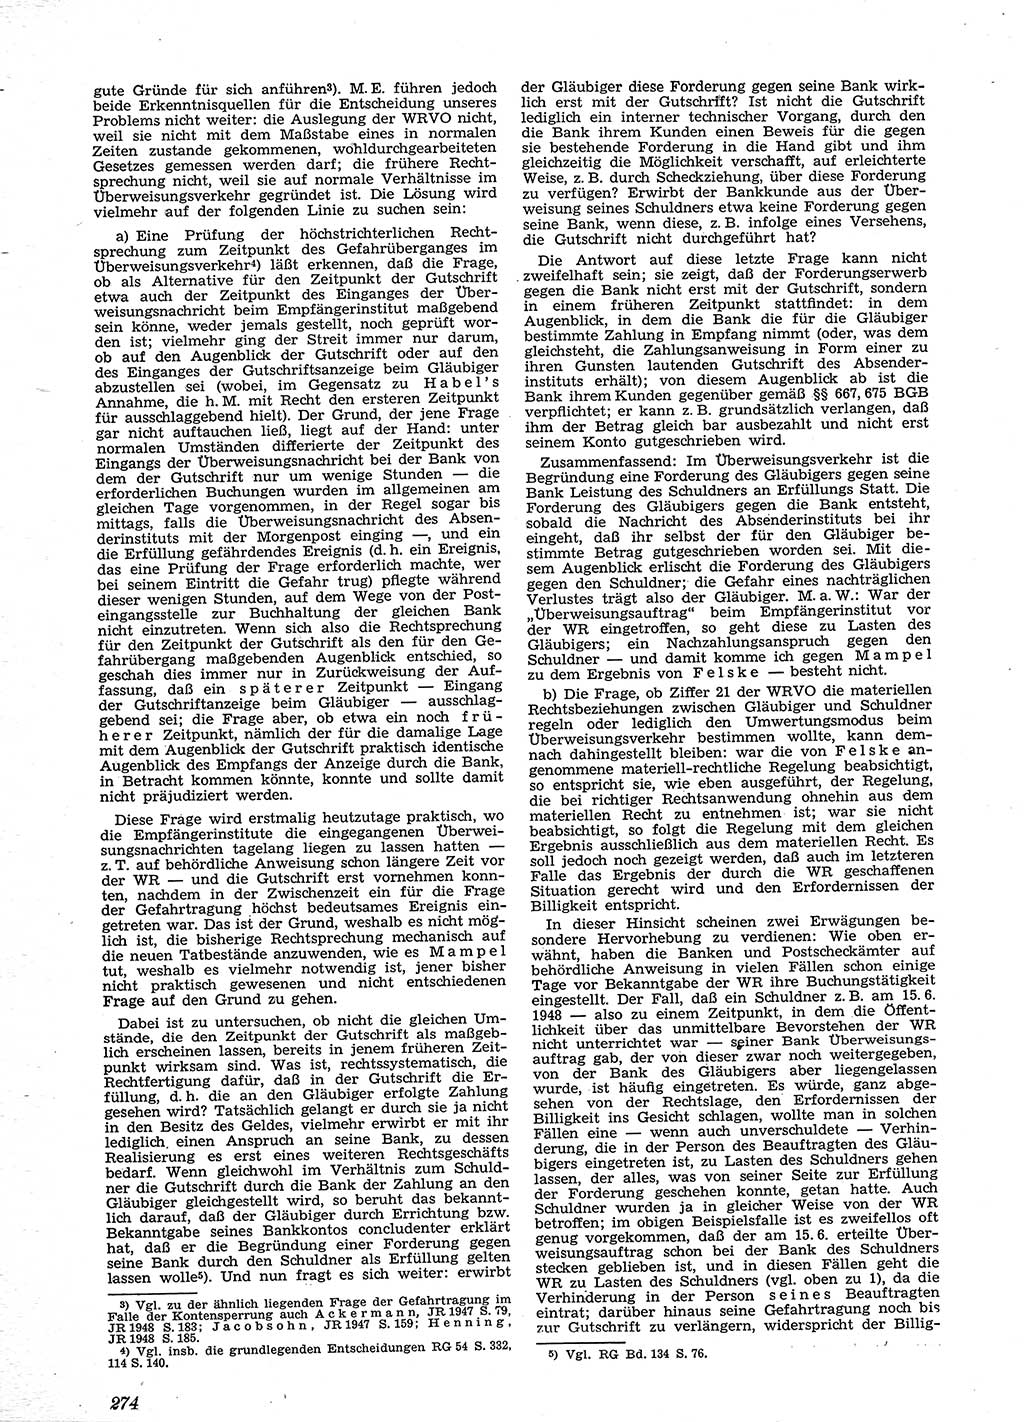 Neue Justiz (NJ), Zeitschrift für Recht und Rechtswissenschaft [Sowjetische Besatzungszone (SBZ) Deutschland], 2. Jahrgang 1948, Seite 274 (NJ SBZ Dtl. 1948, S. 274)